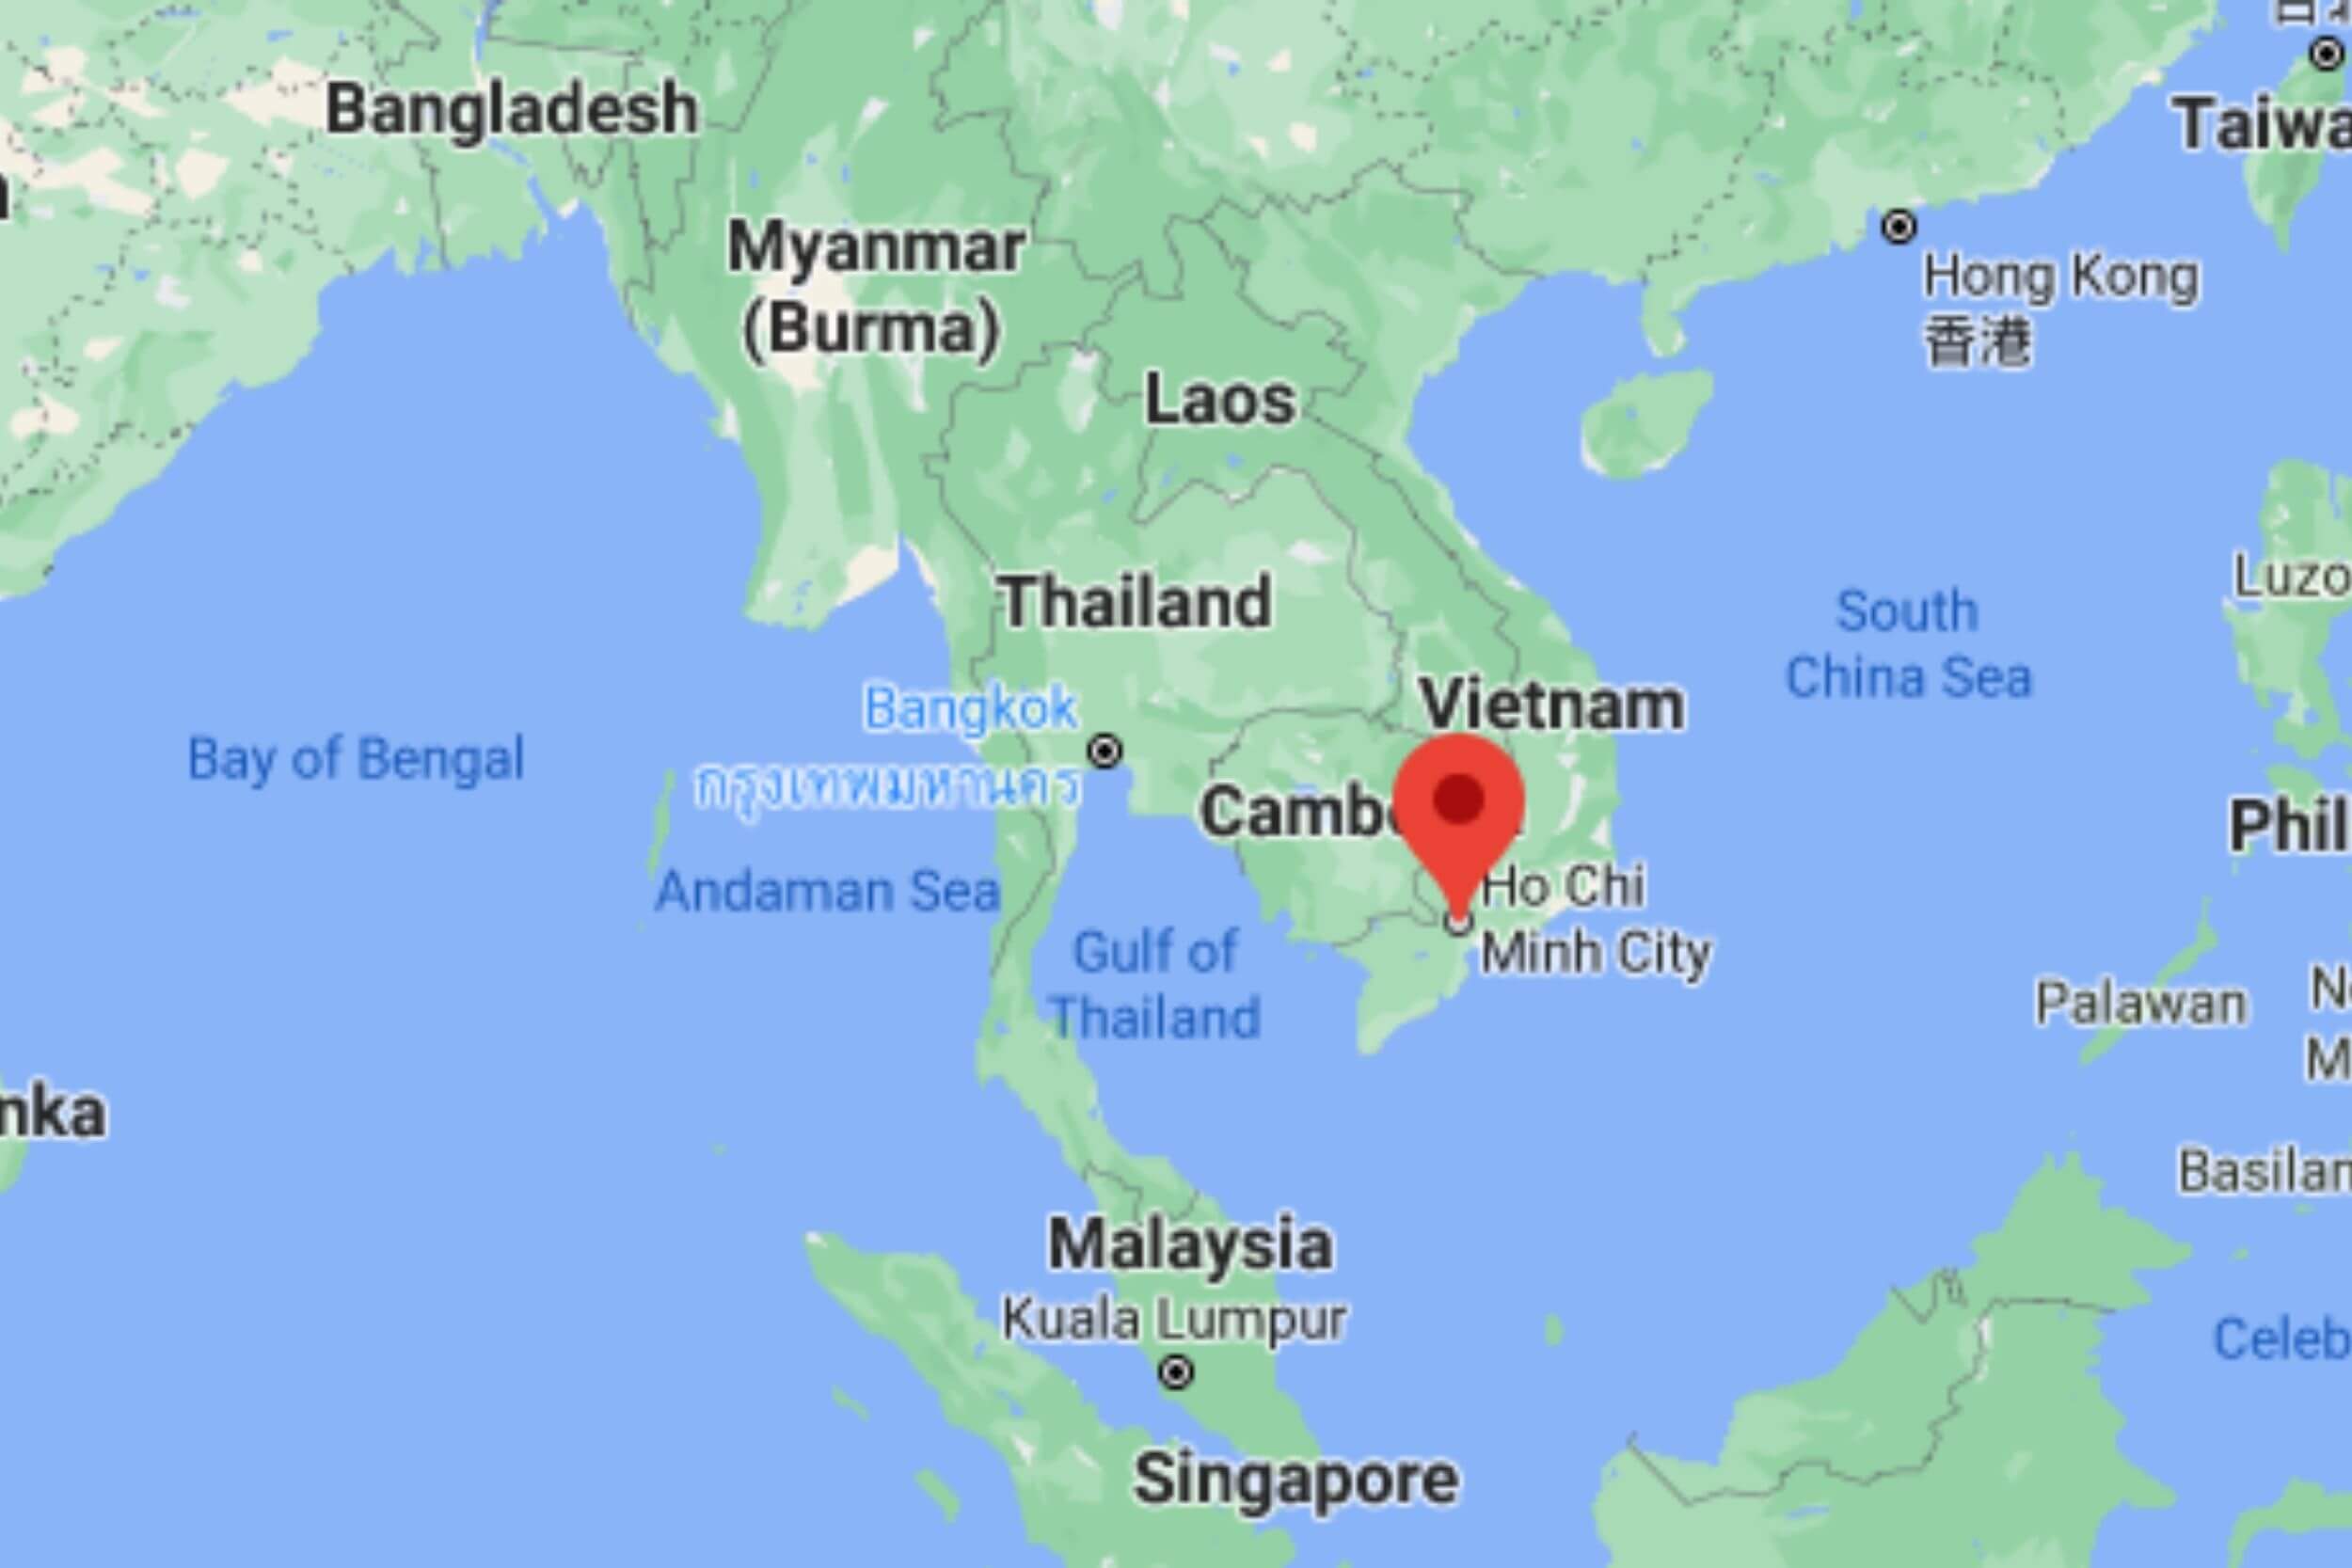 Ho Chi Minh City on map